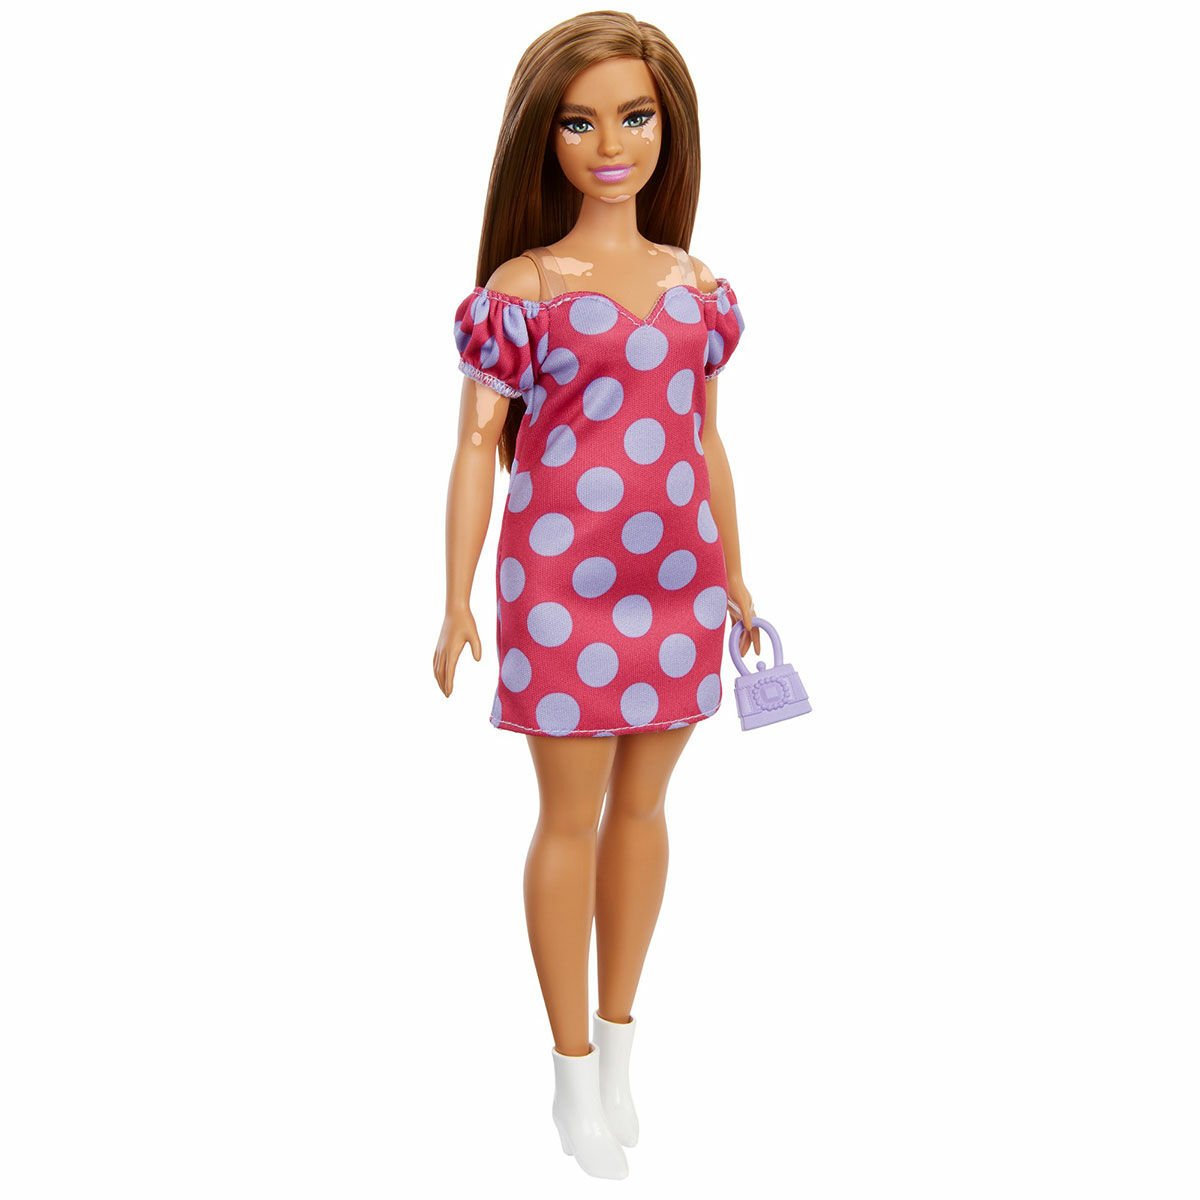 GRB62 Barbie Fashionistas Pembe-Mor Renkli Elbiseli, Kahverengi Saçlı